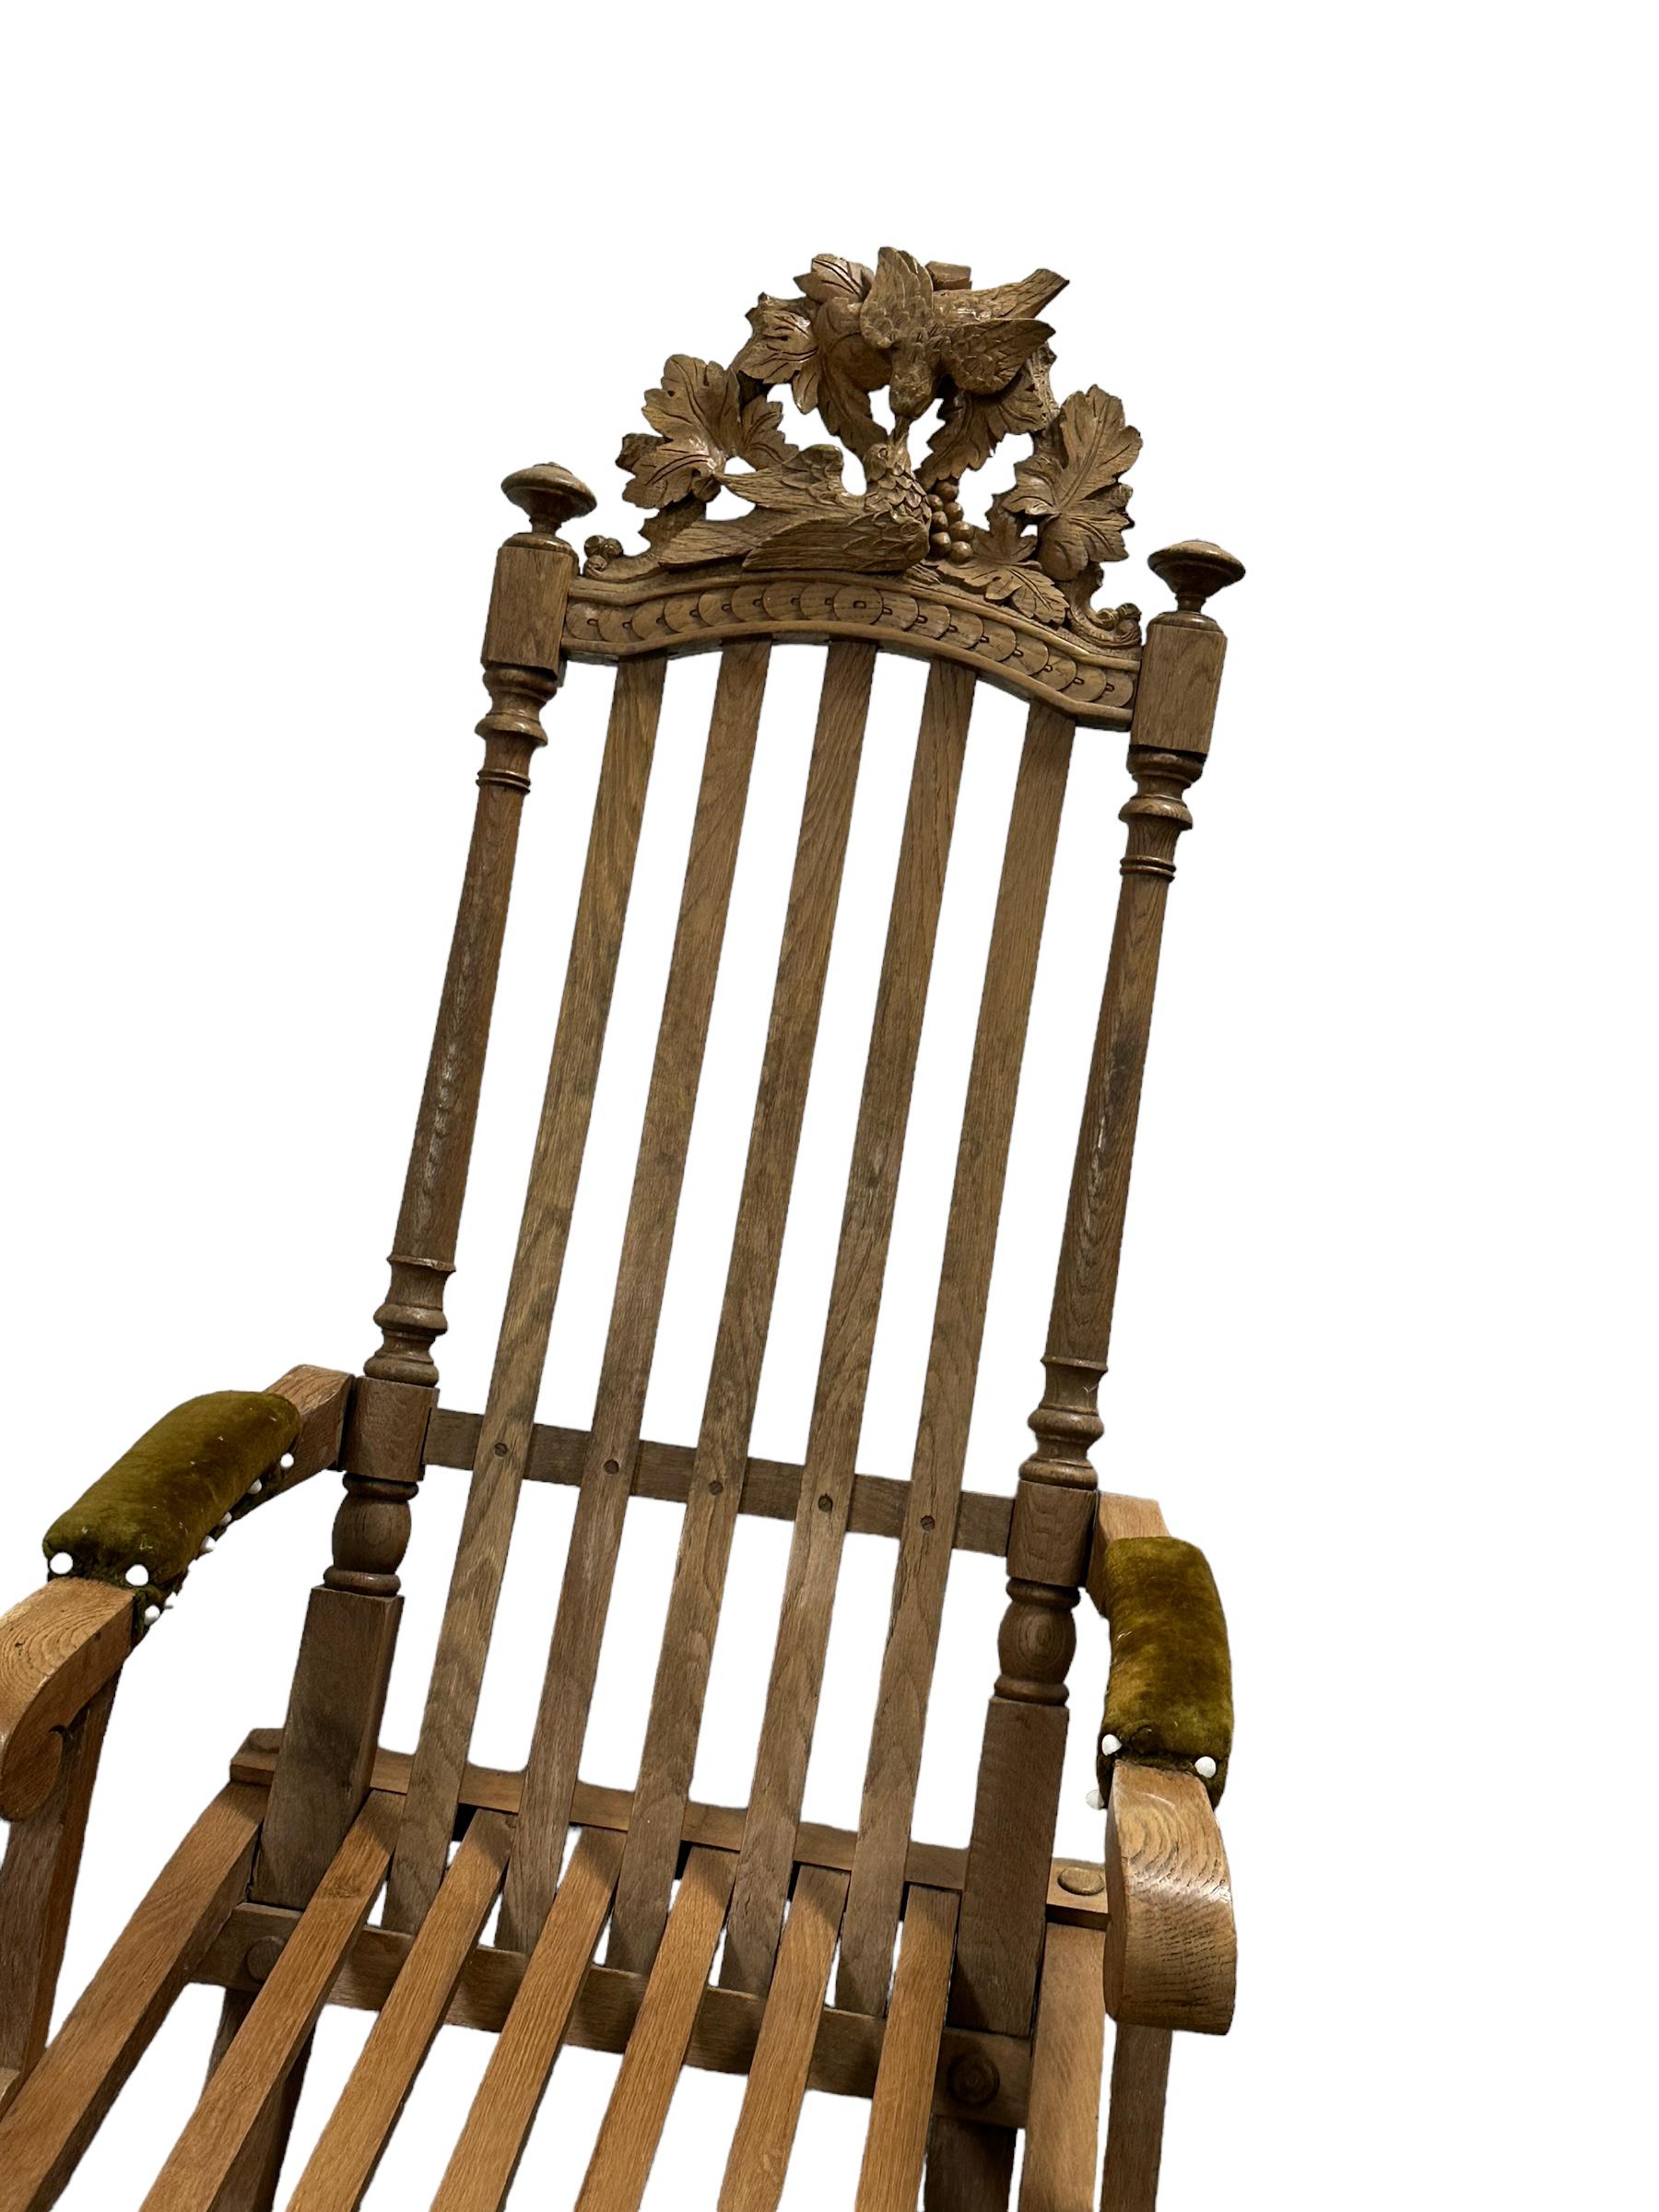 Cette chaise pliante du début du 20e siècle, originaire d'Allemagne, est un excellent exemple du style forêt noire. Le meuble est doté d'une assise en bois d'aspect rustique et d'un dossier en bois sculpté. Le tabouret présente un design simple et